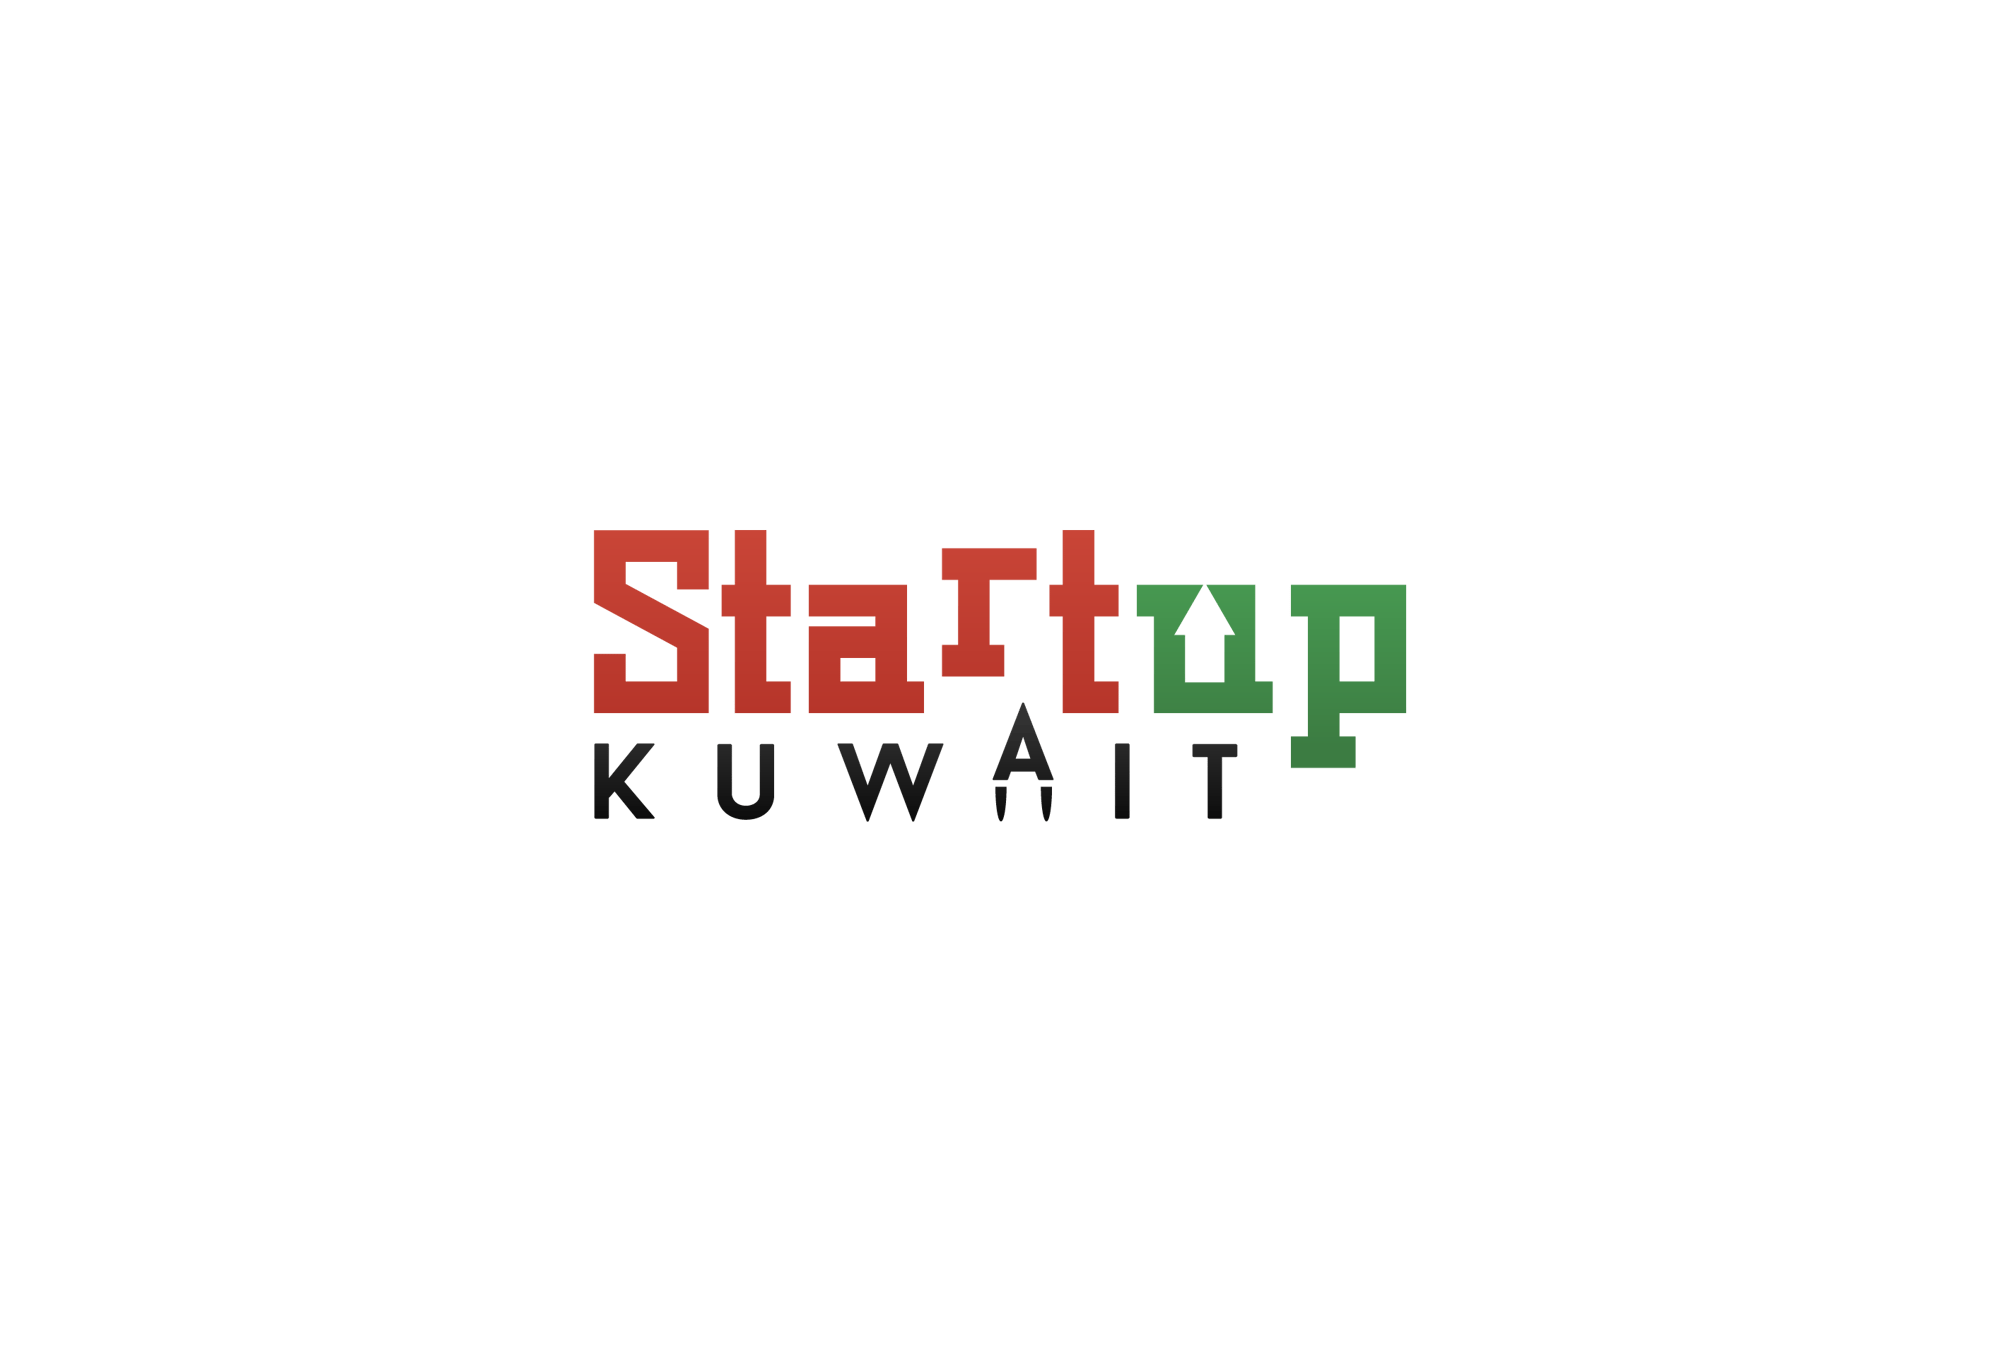 Startup Kuwait